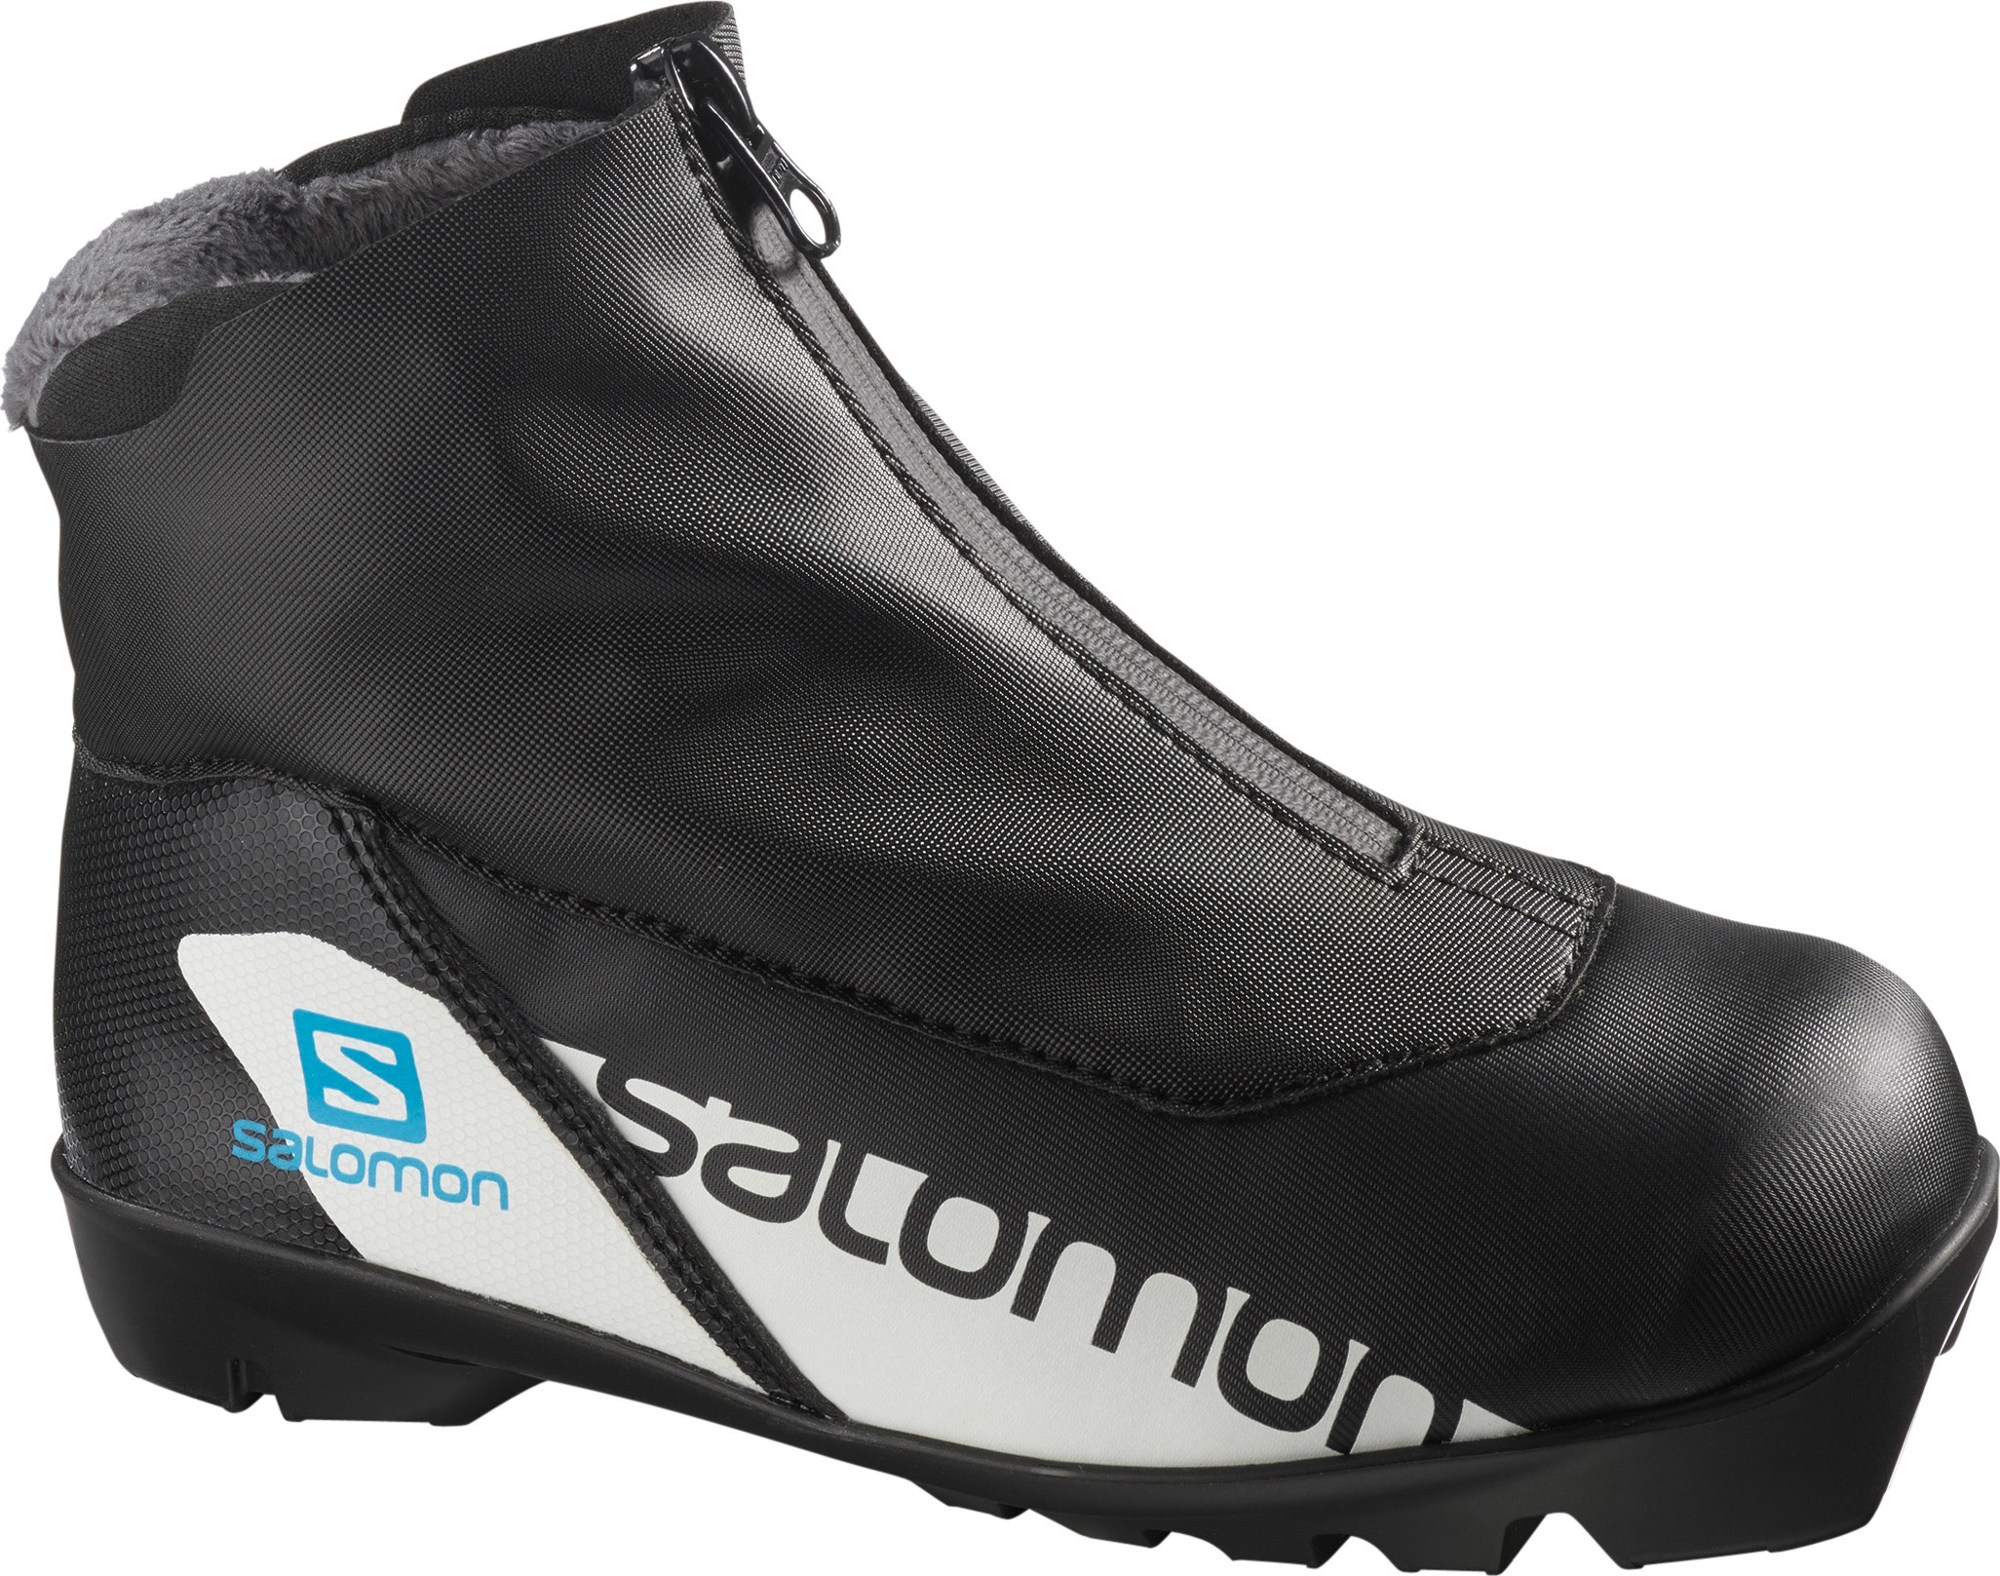 Ботинки для беговых лыж RC Prolink Jr. — Детские Salomon, черный